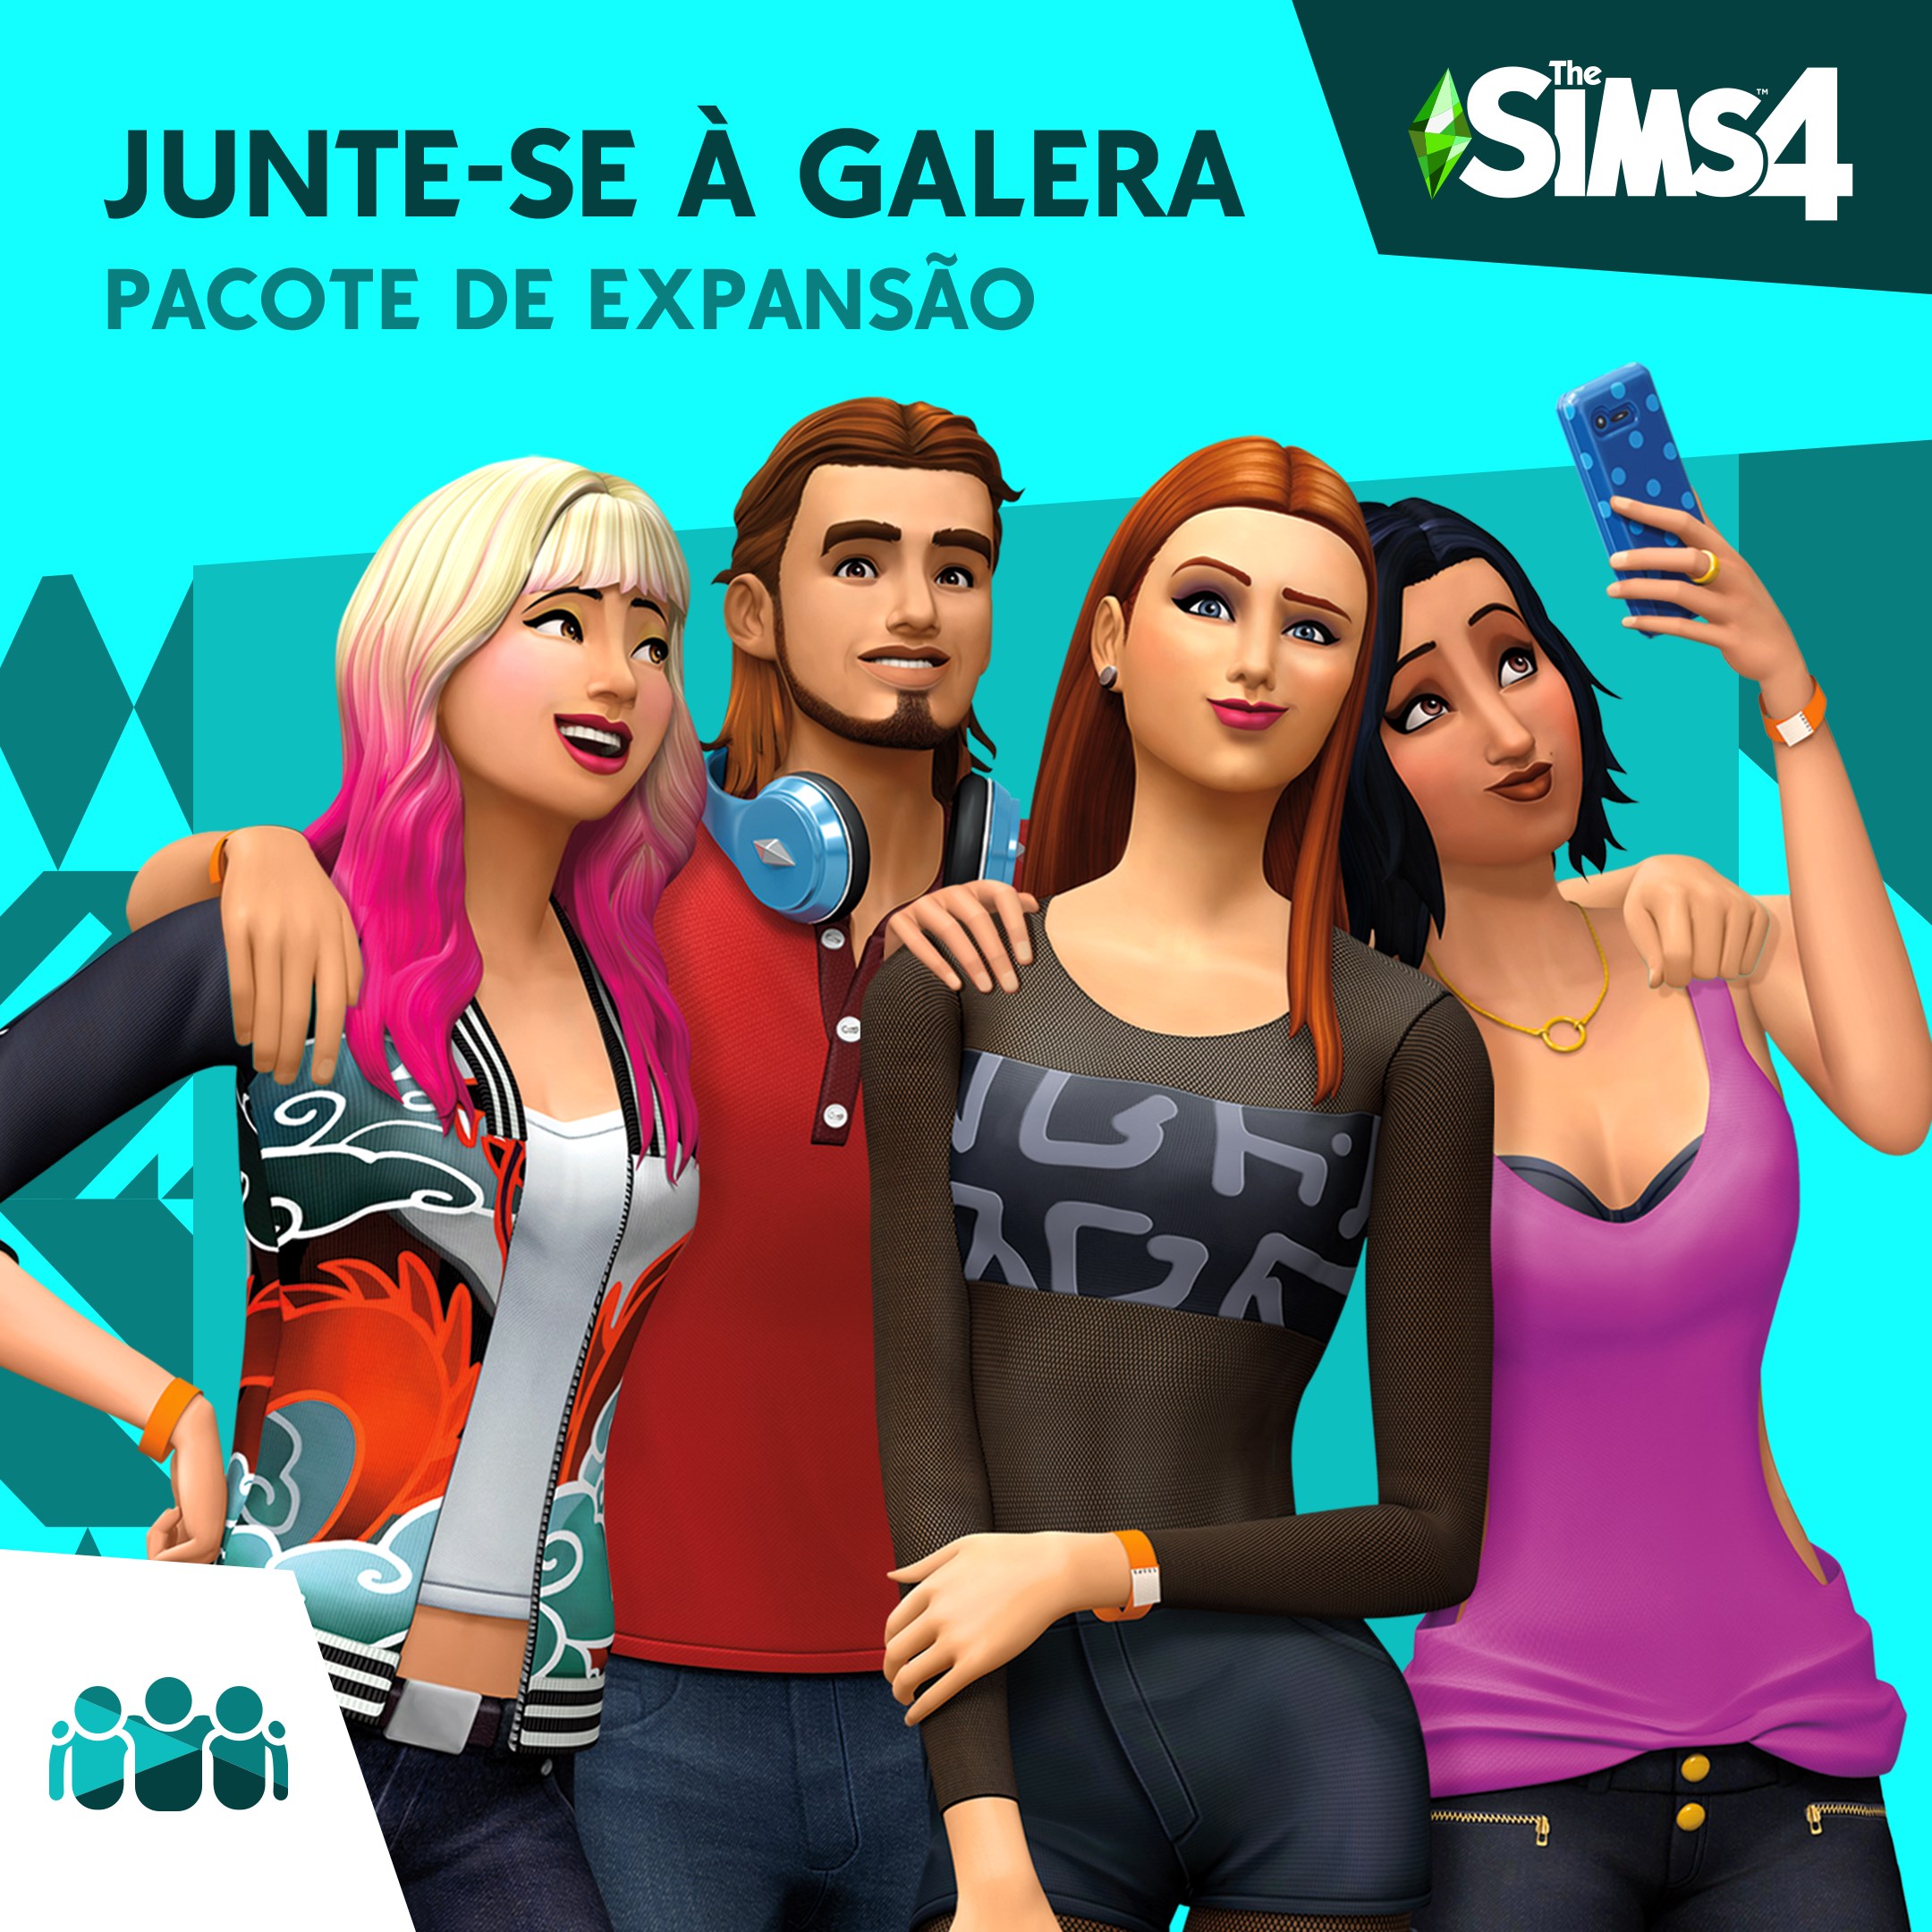 The Sims 4 Junte-se à Galera